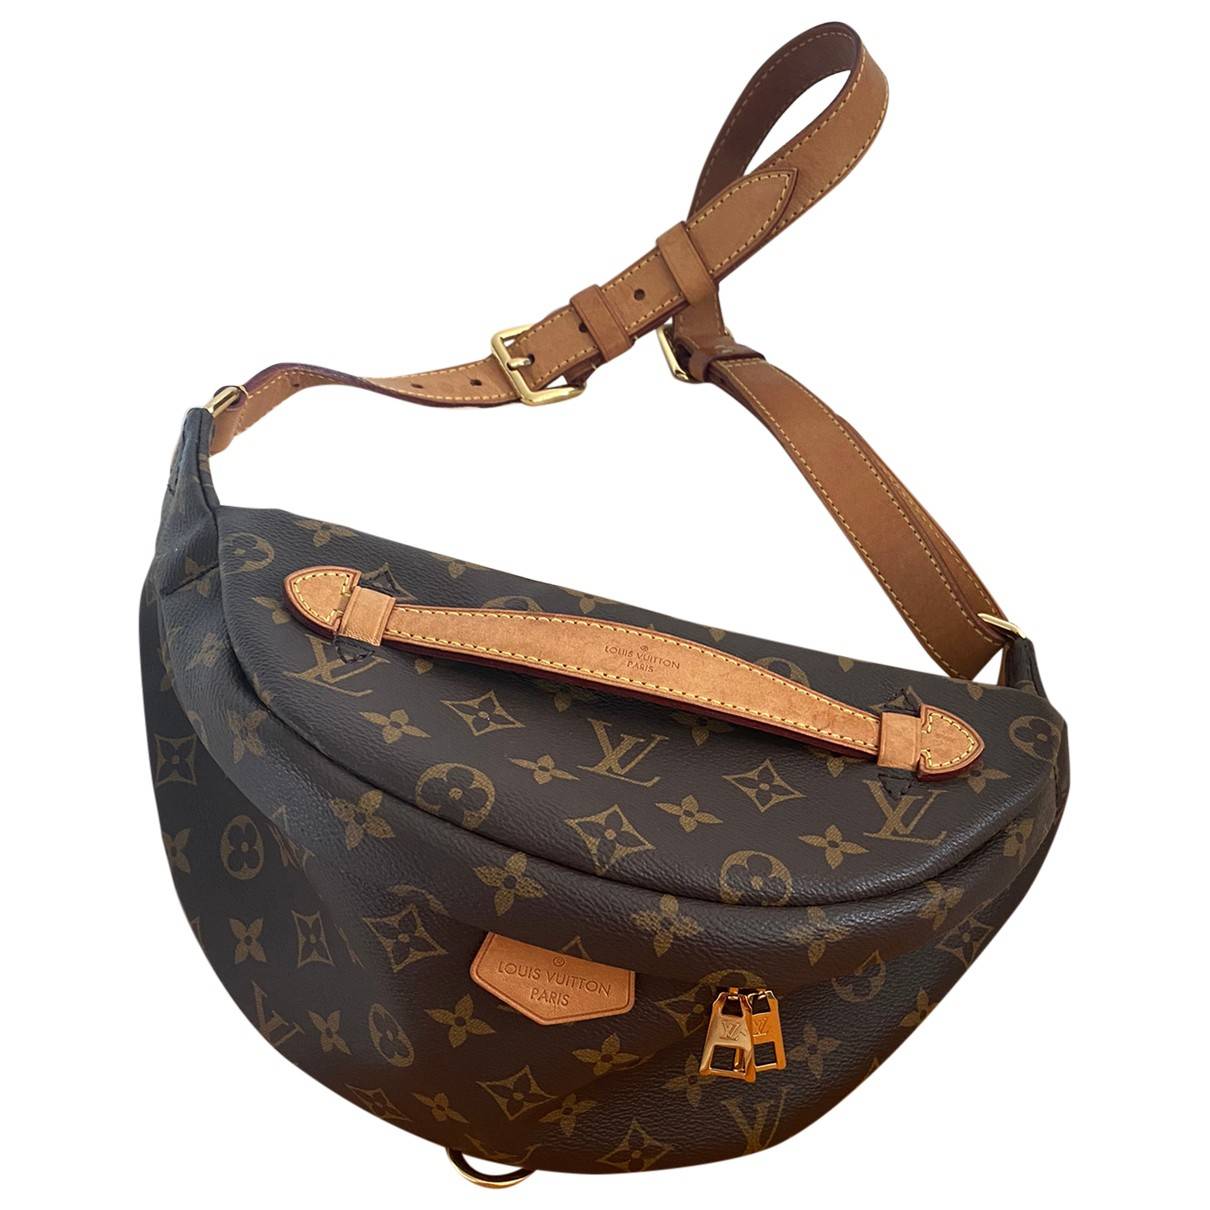 Bum bag / sac ceinture cloth handbag Louis Vuitton Brown in Cloth - 31696017